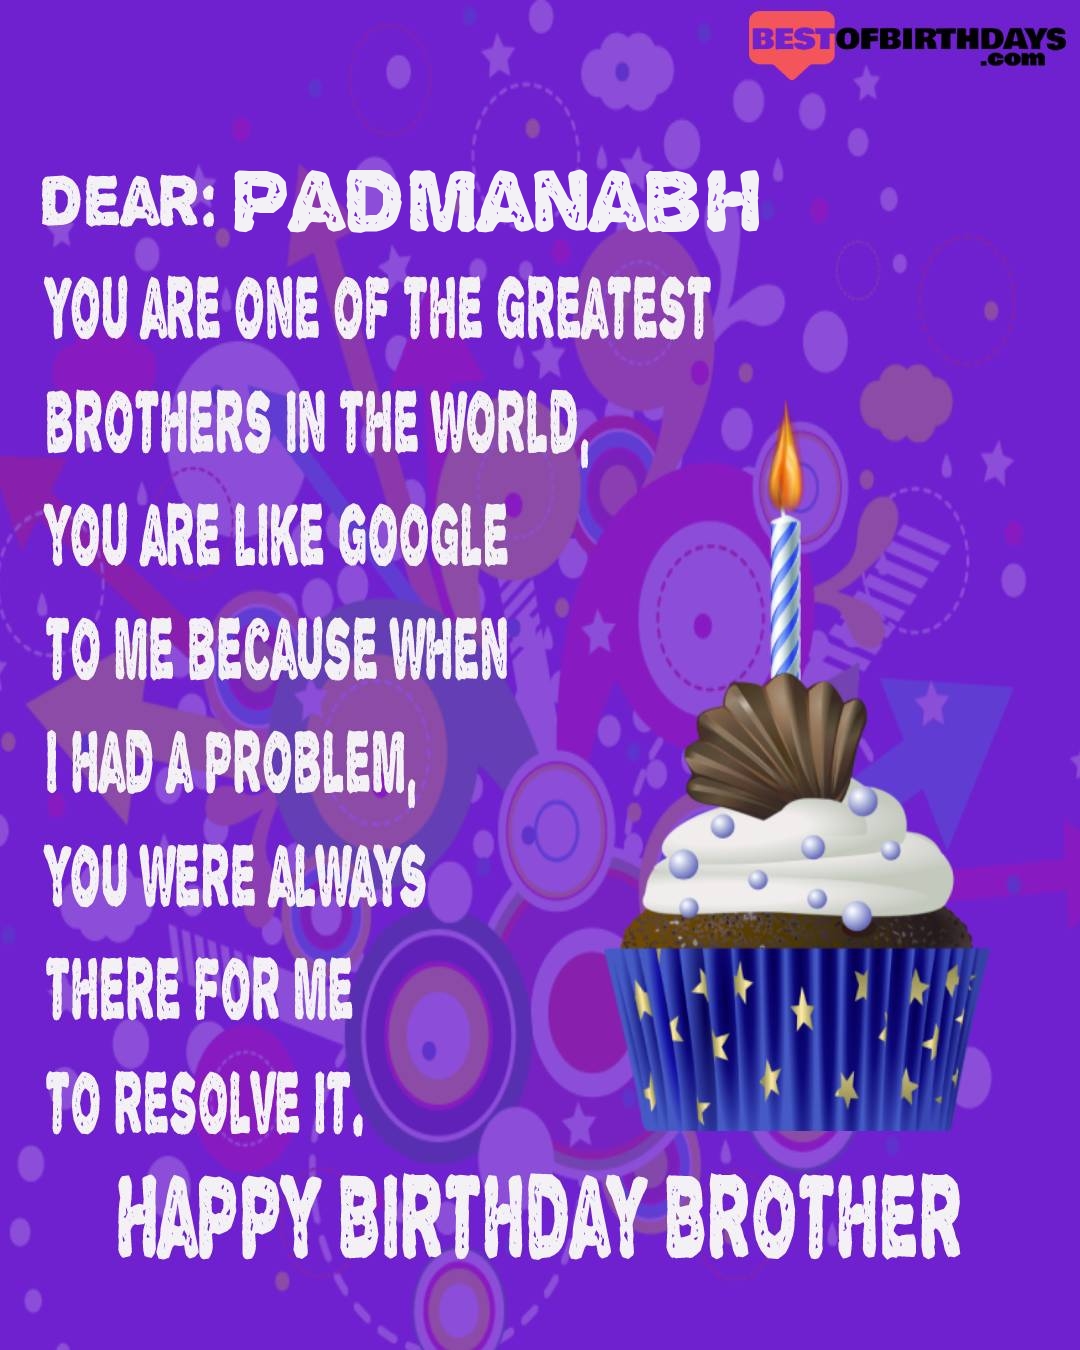 Happy birthday padmanabh bhai brother bro